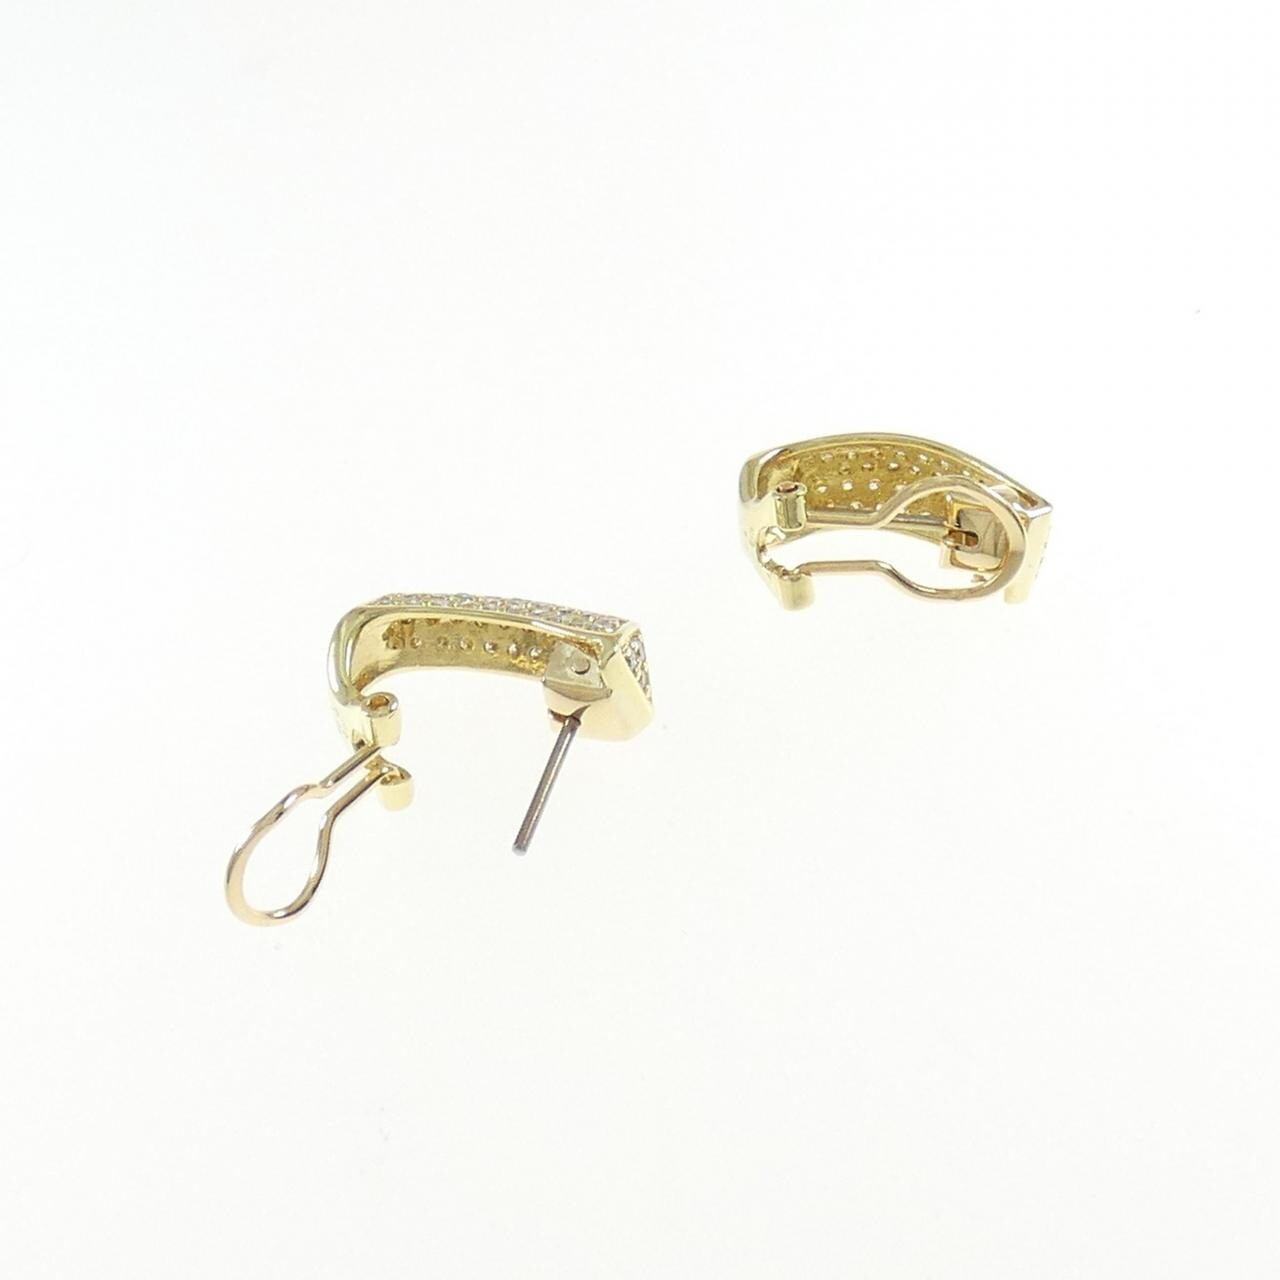 K18YG Diamond earrings 1.00CT